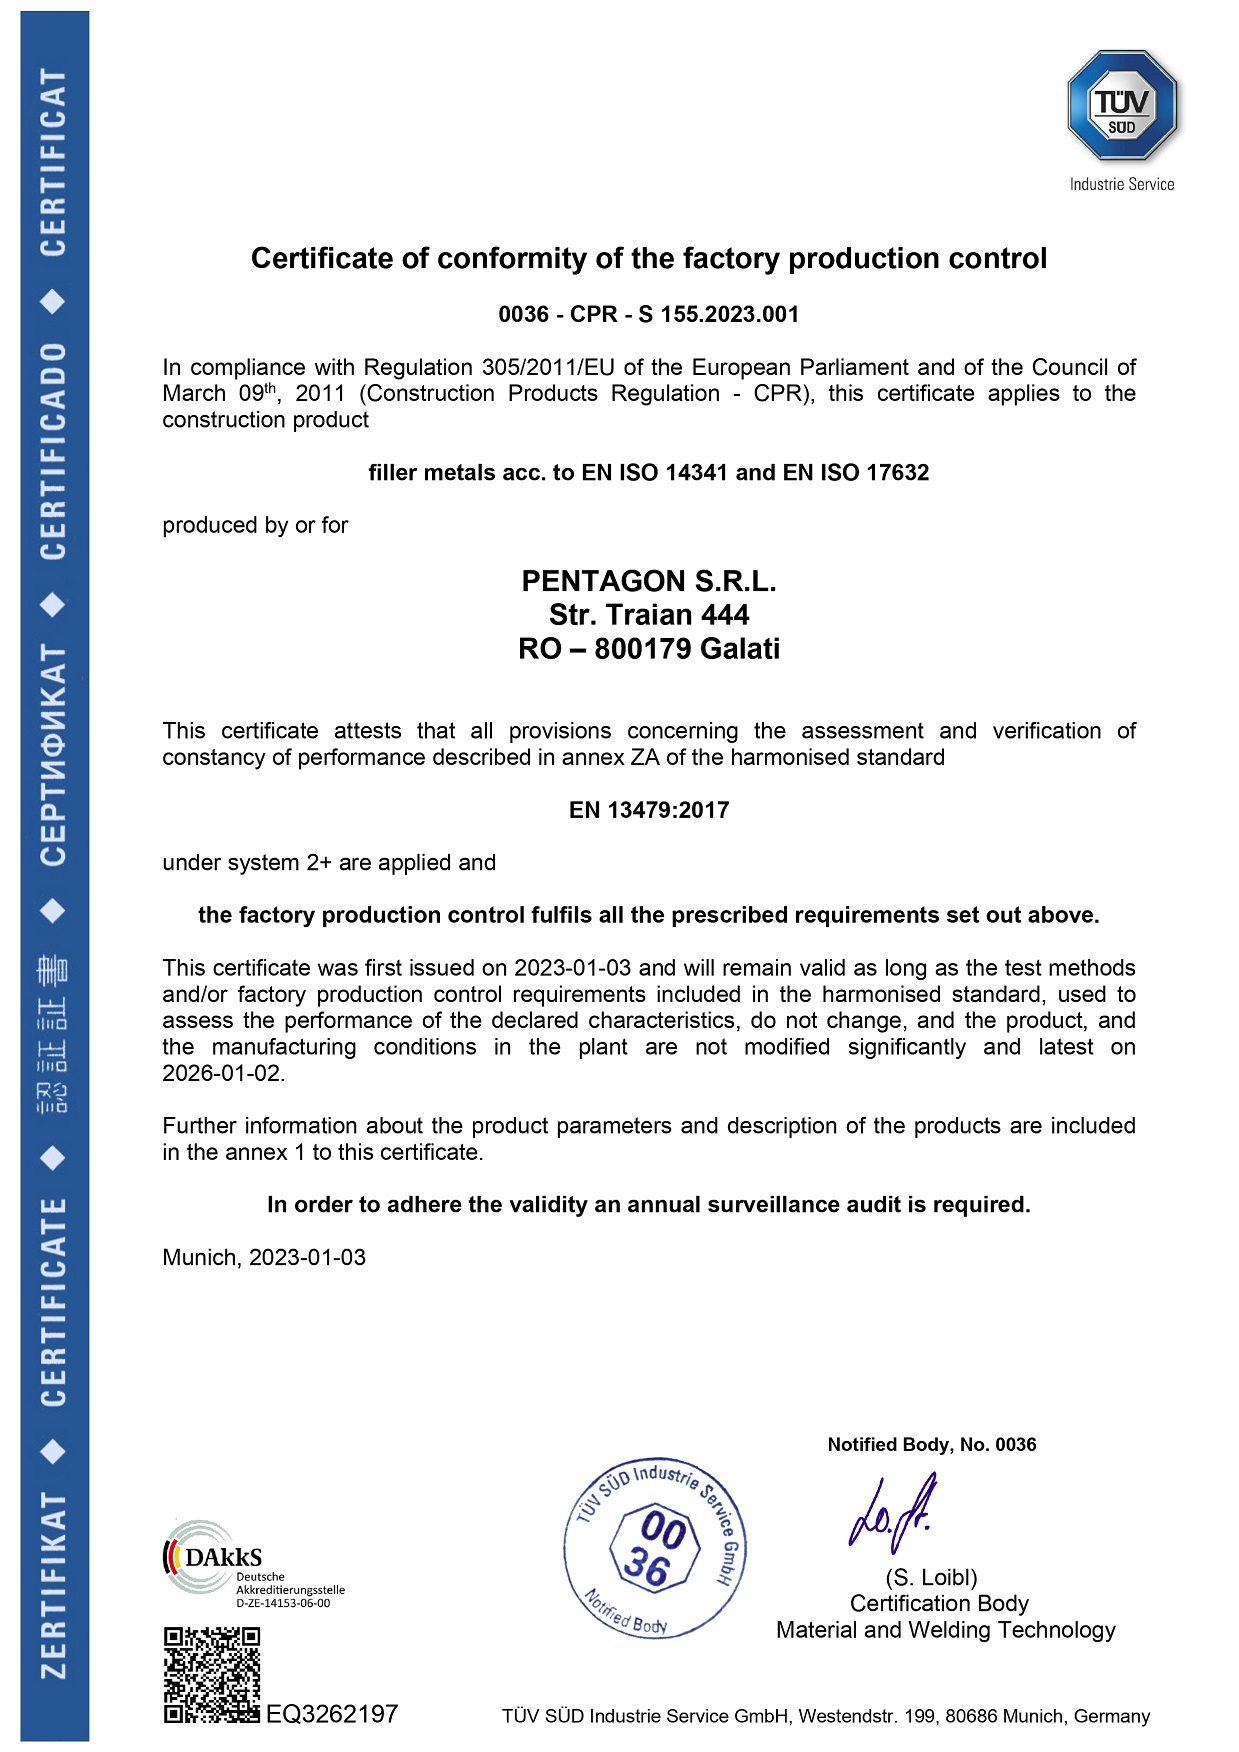 Certificat de conformitate al controlului producției din fabrică Pentagon Romania